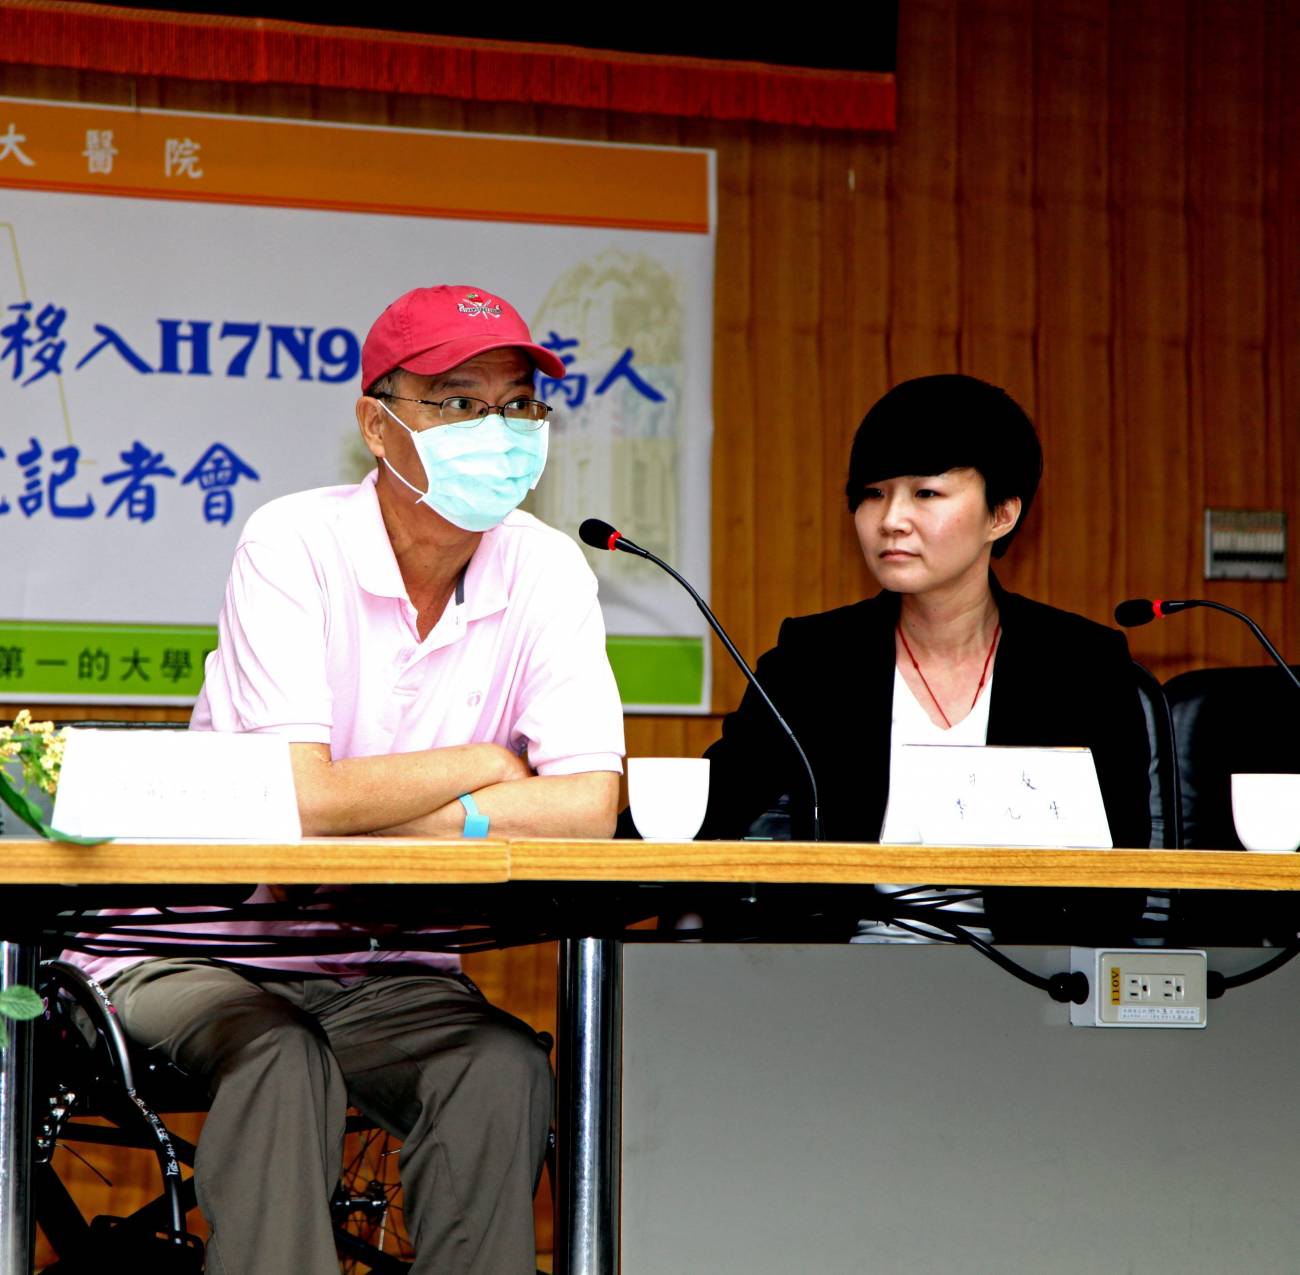 Un enfermo con el virus H7N9 ofrece una rueda de prensa en la que se anuncia su salida del hospital en Taipei (Taiwán) el pasado 24 de mayo. / Efe